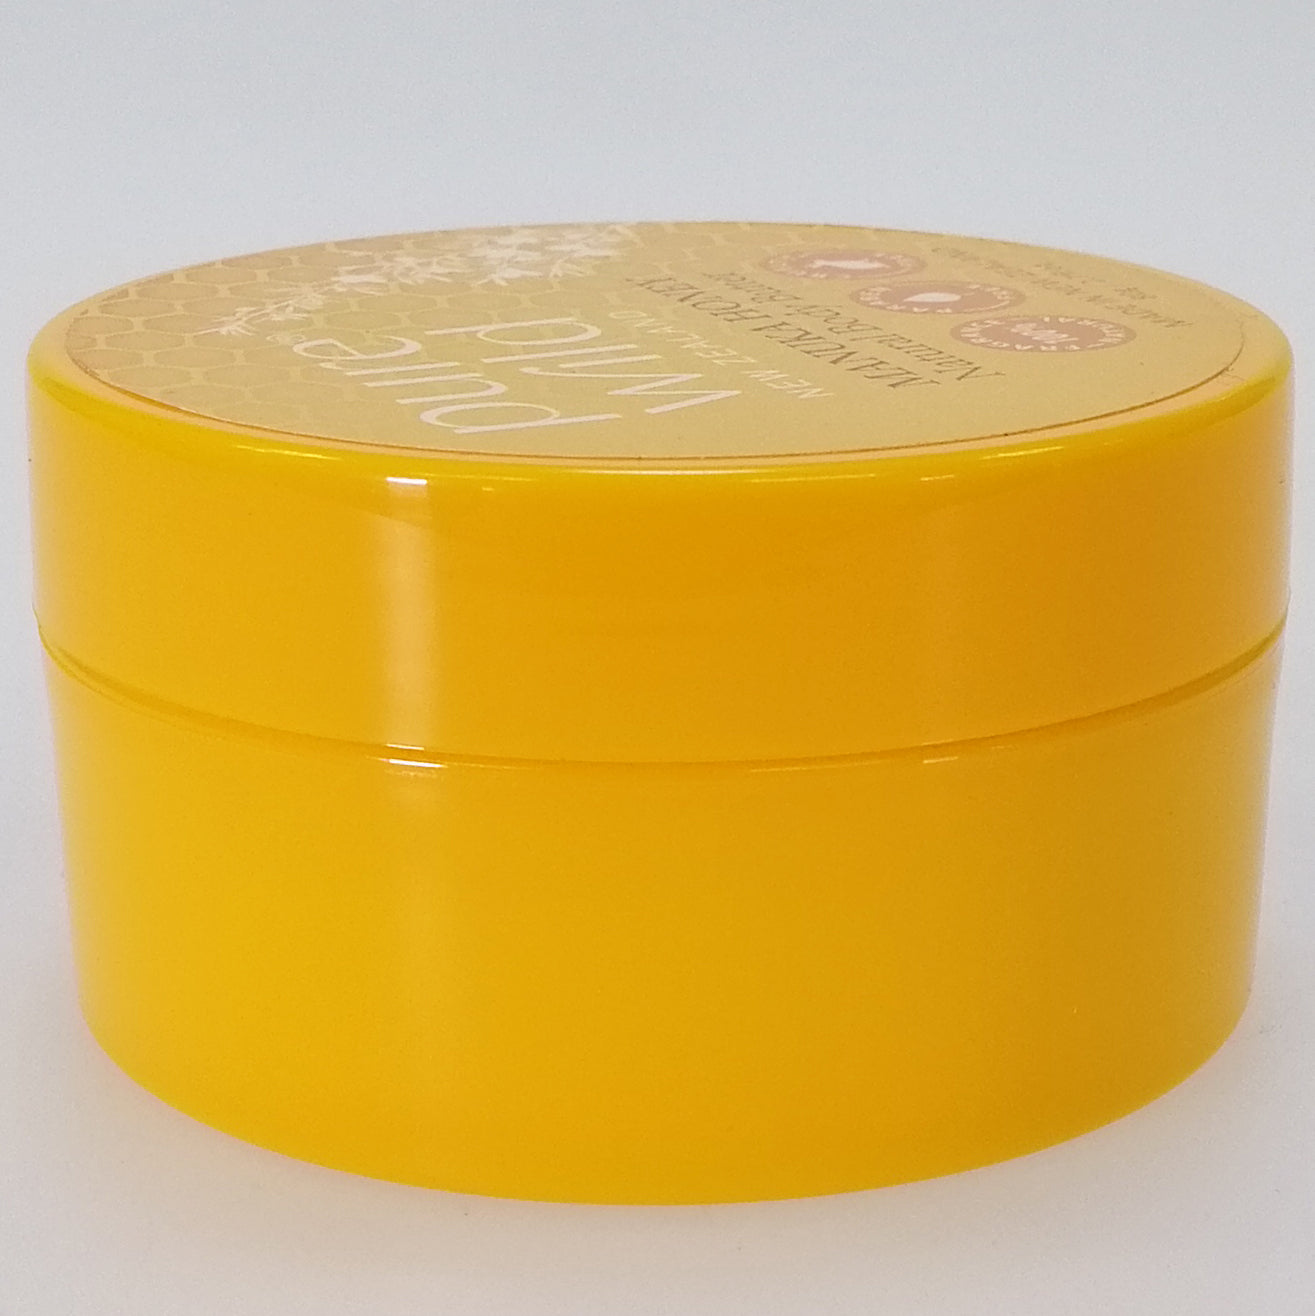 Purewild Natural Body Butter Moisturiser - Manuka Honey